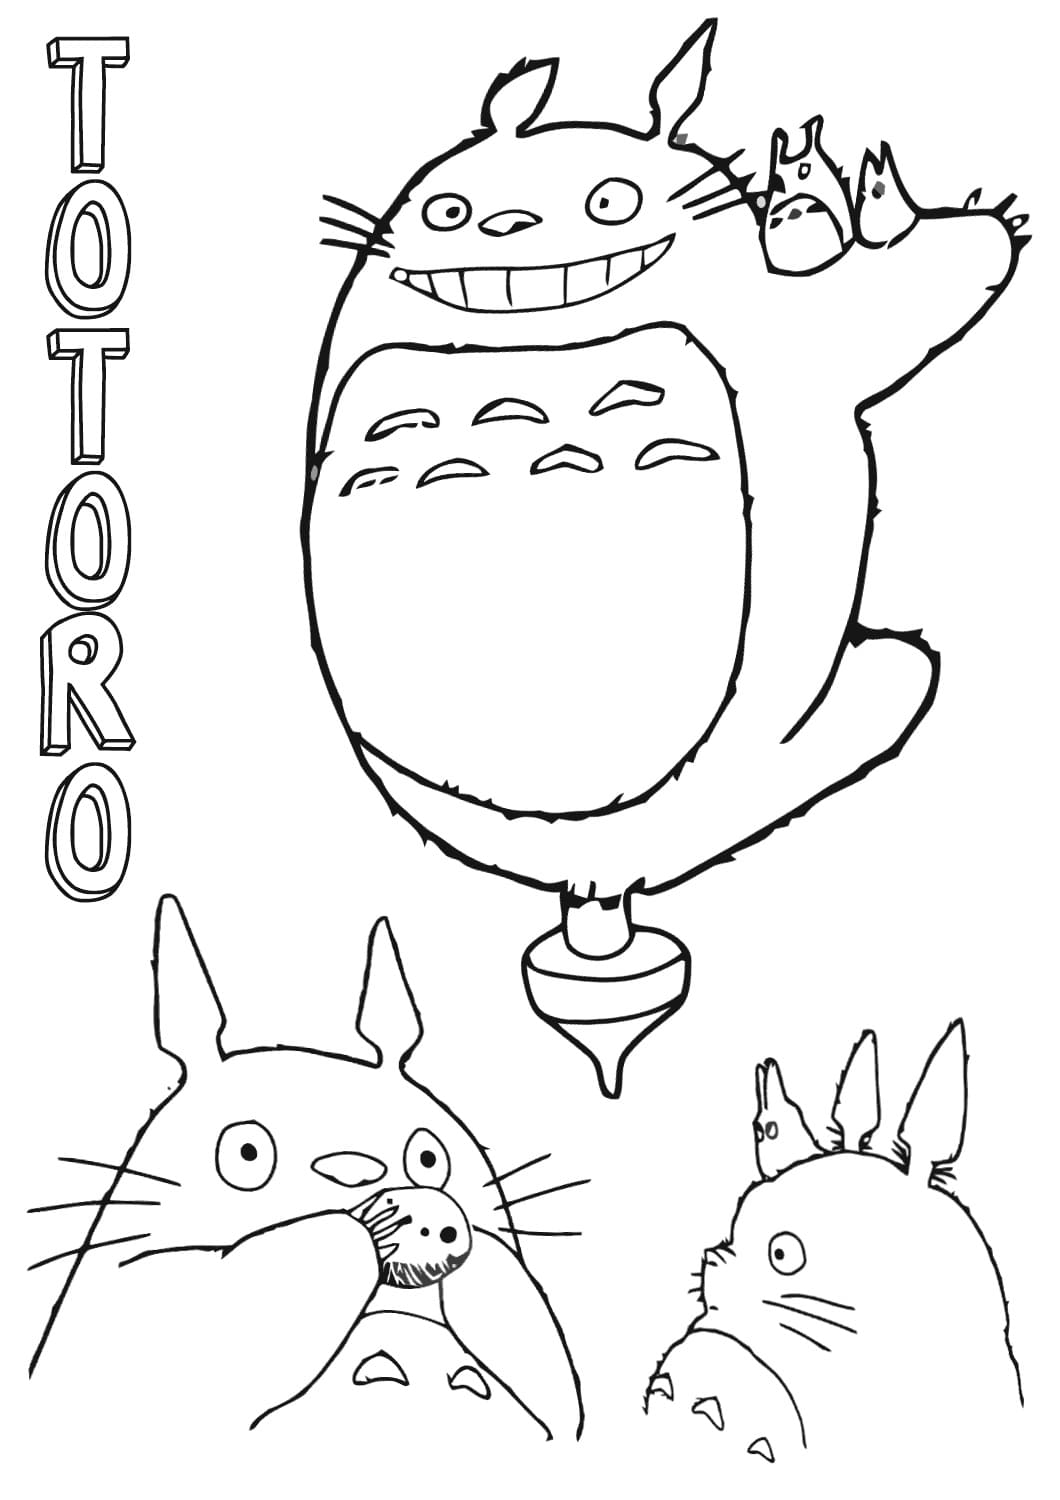 Totoro 23 van My Neighbor Totoro om af te drukken en te kleuren